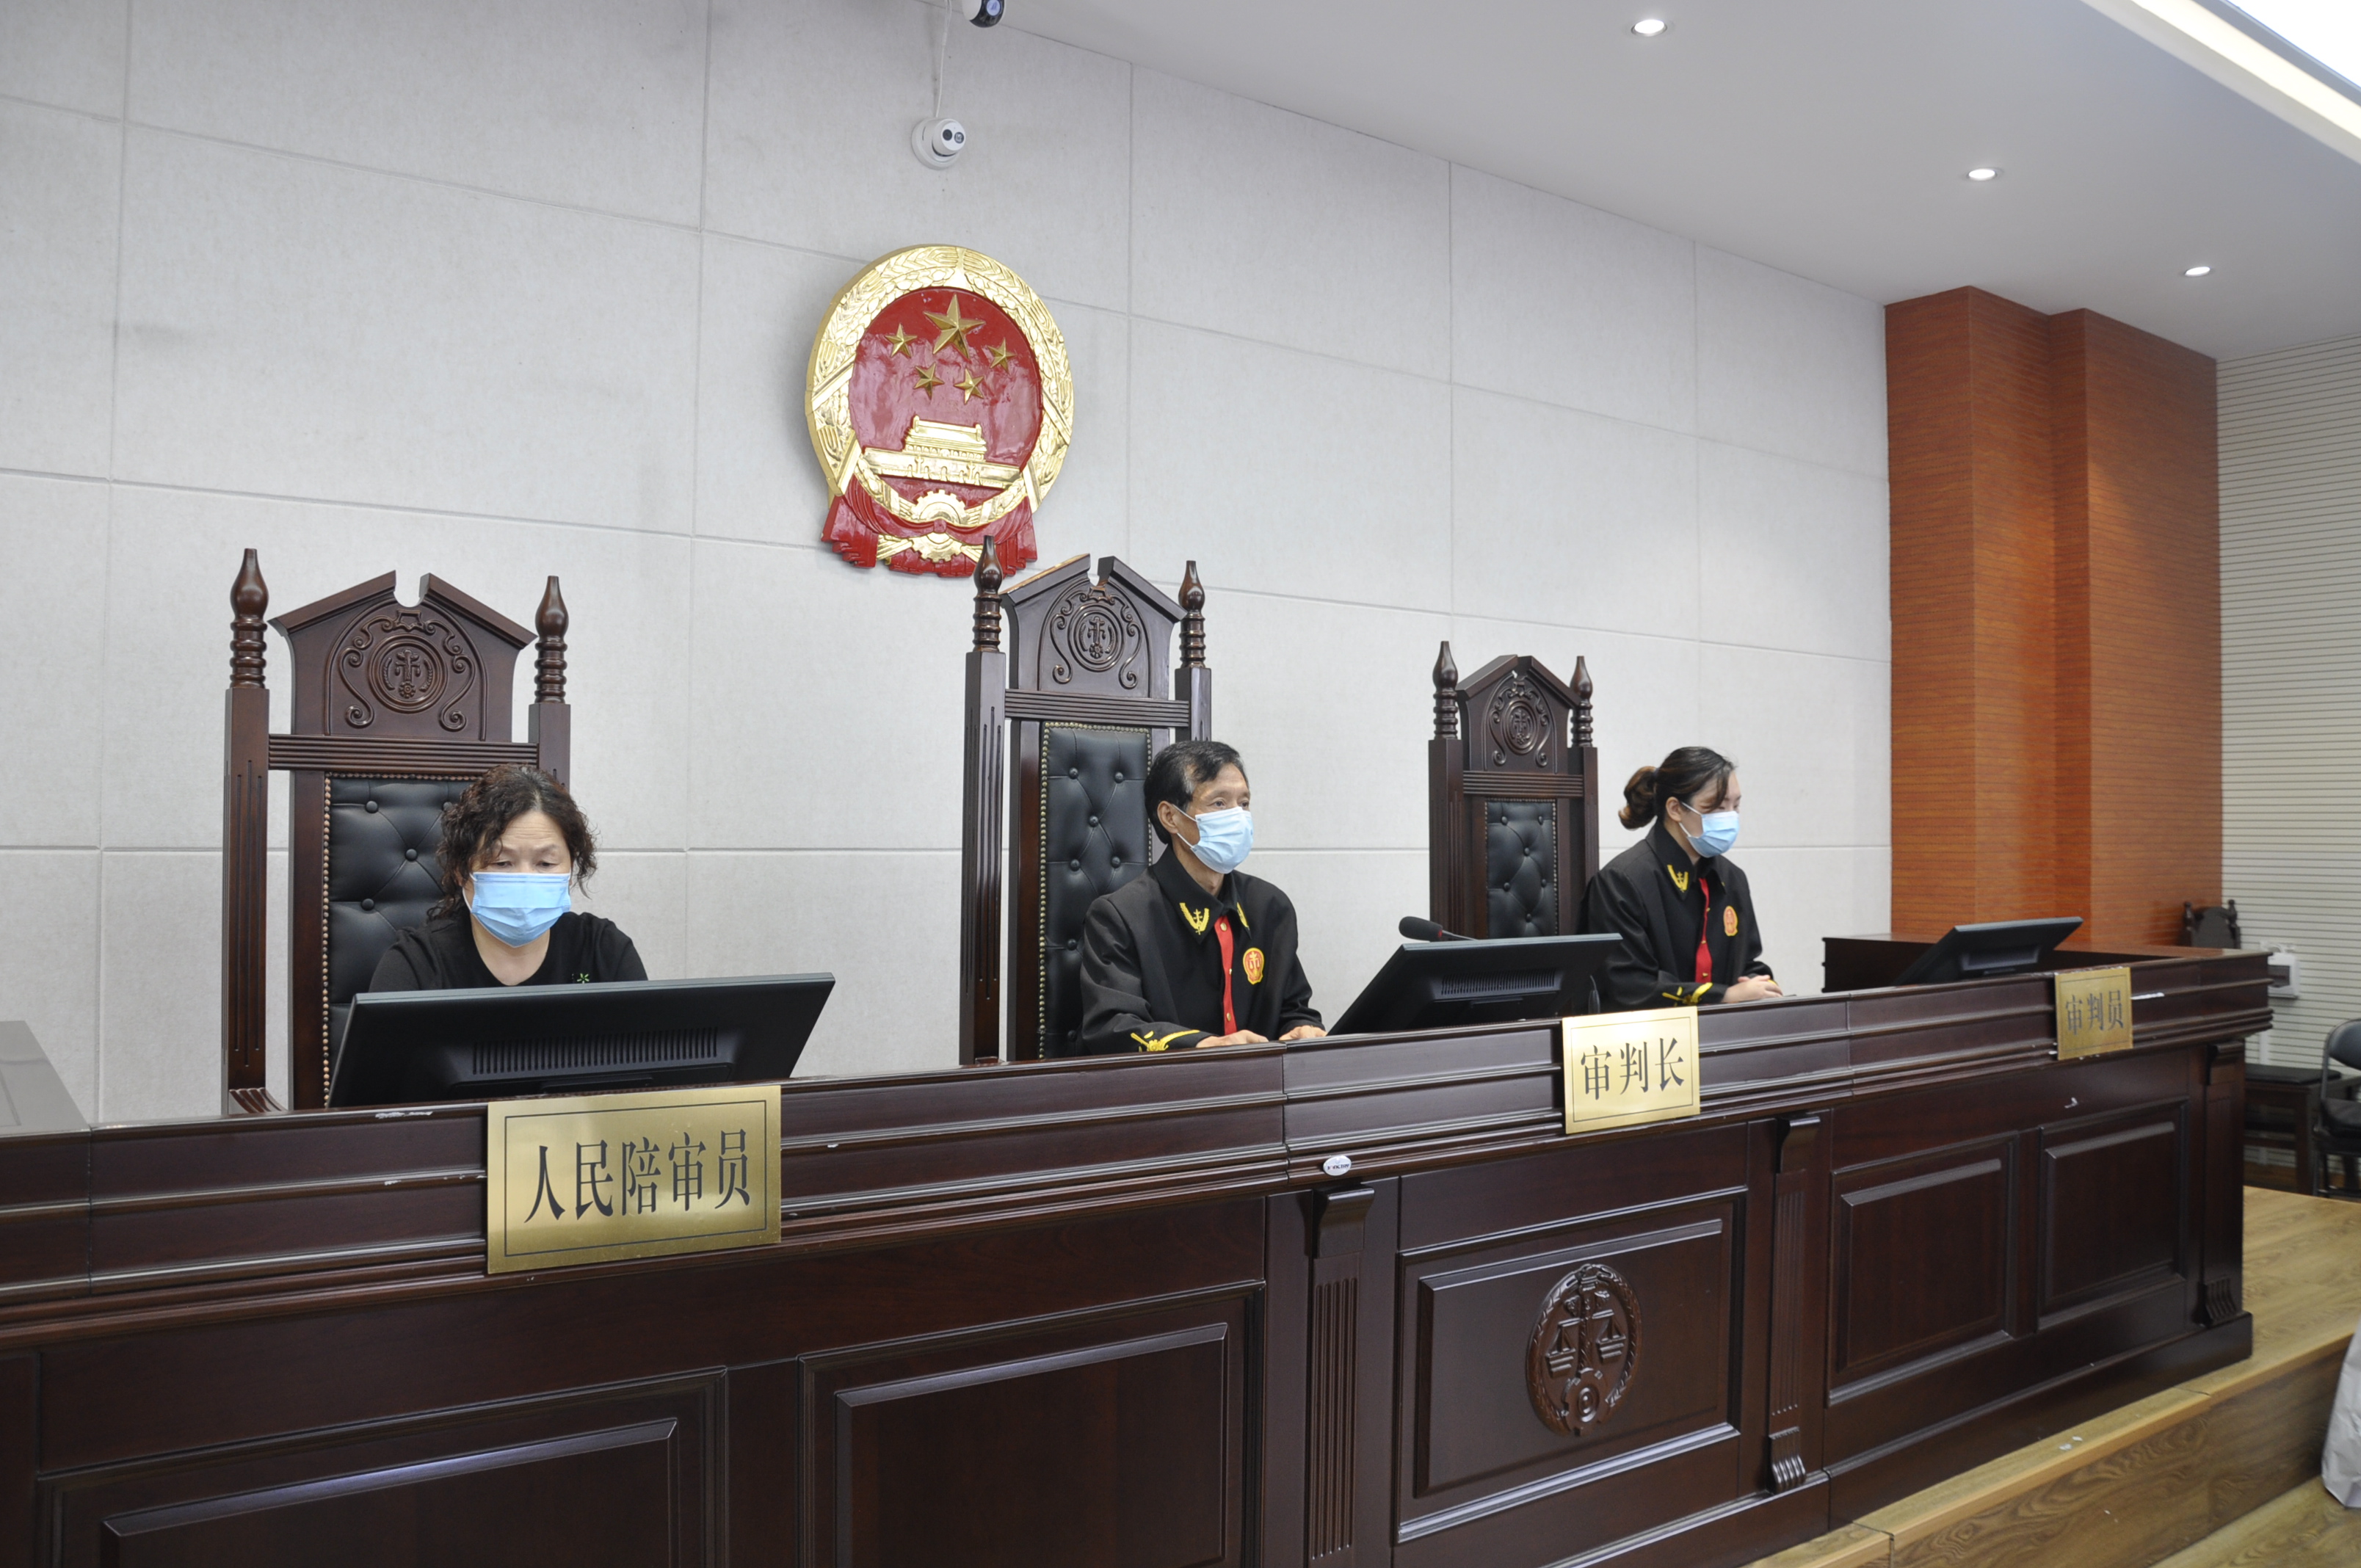 孟津法院:刘某某等14人涉嫌恶势力犯罪一案开庭审理